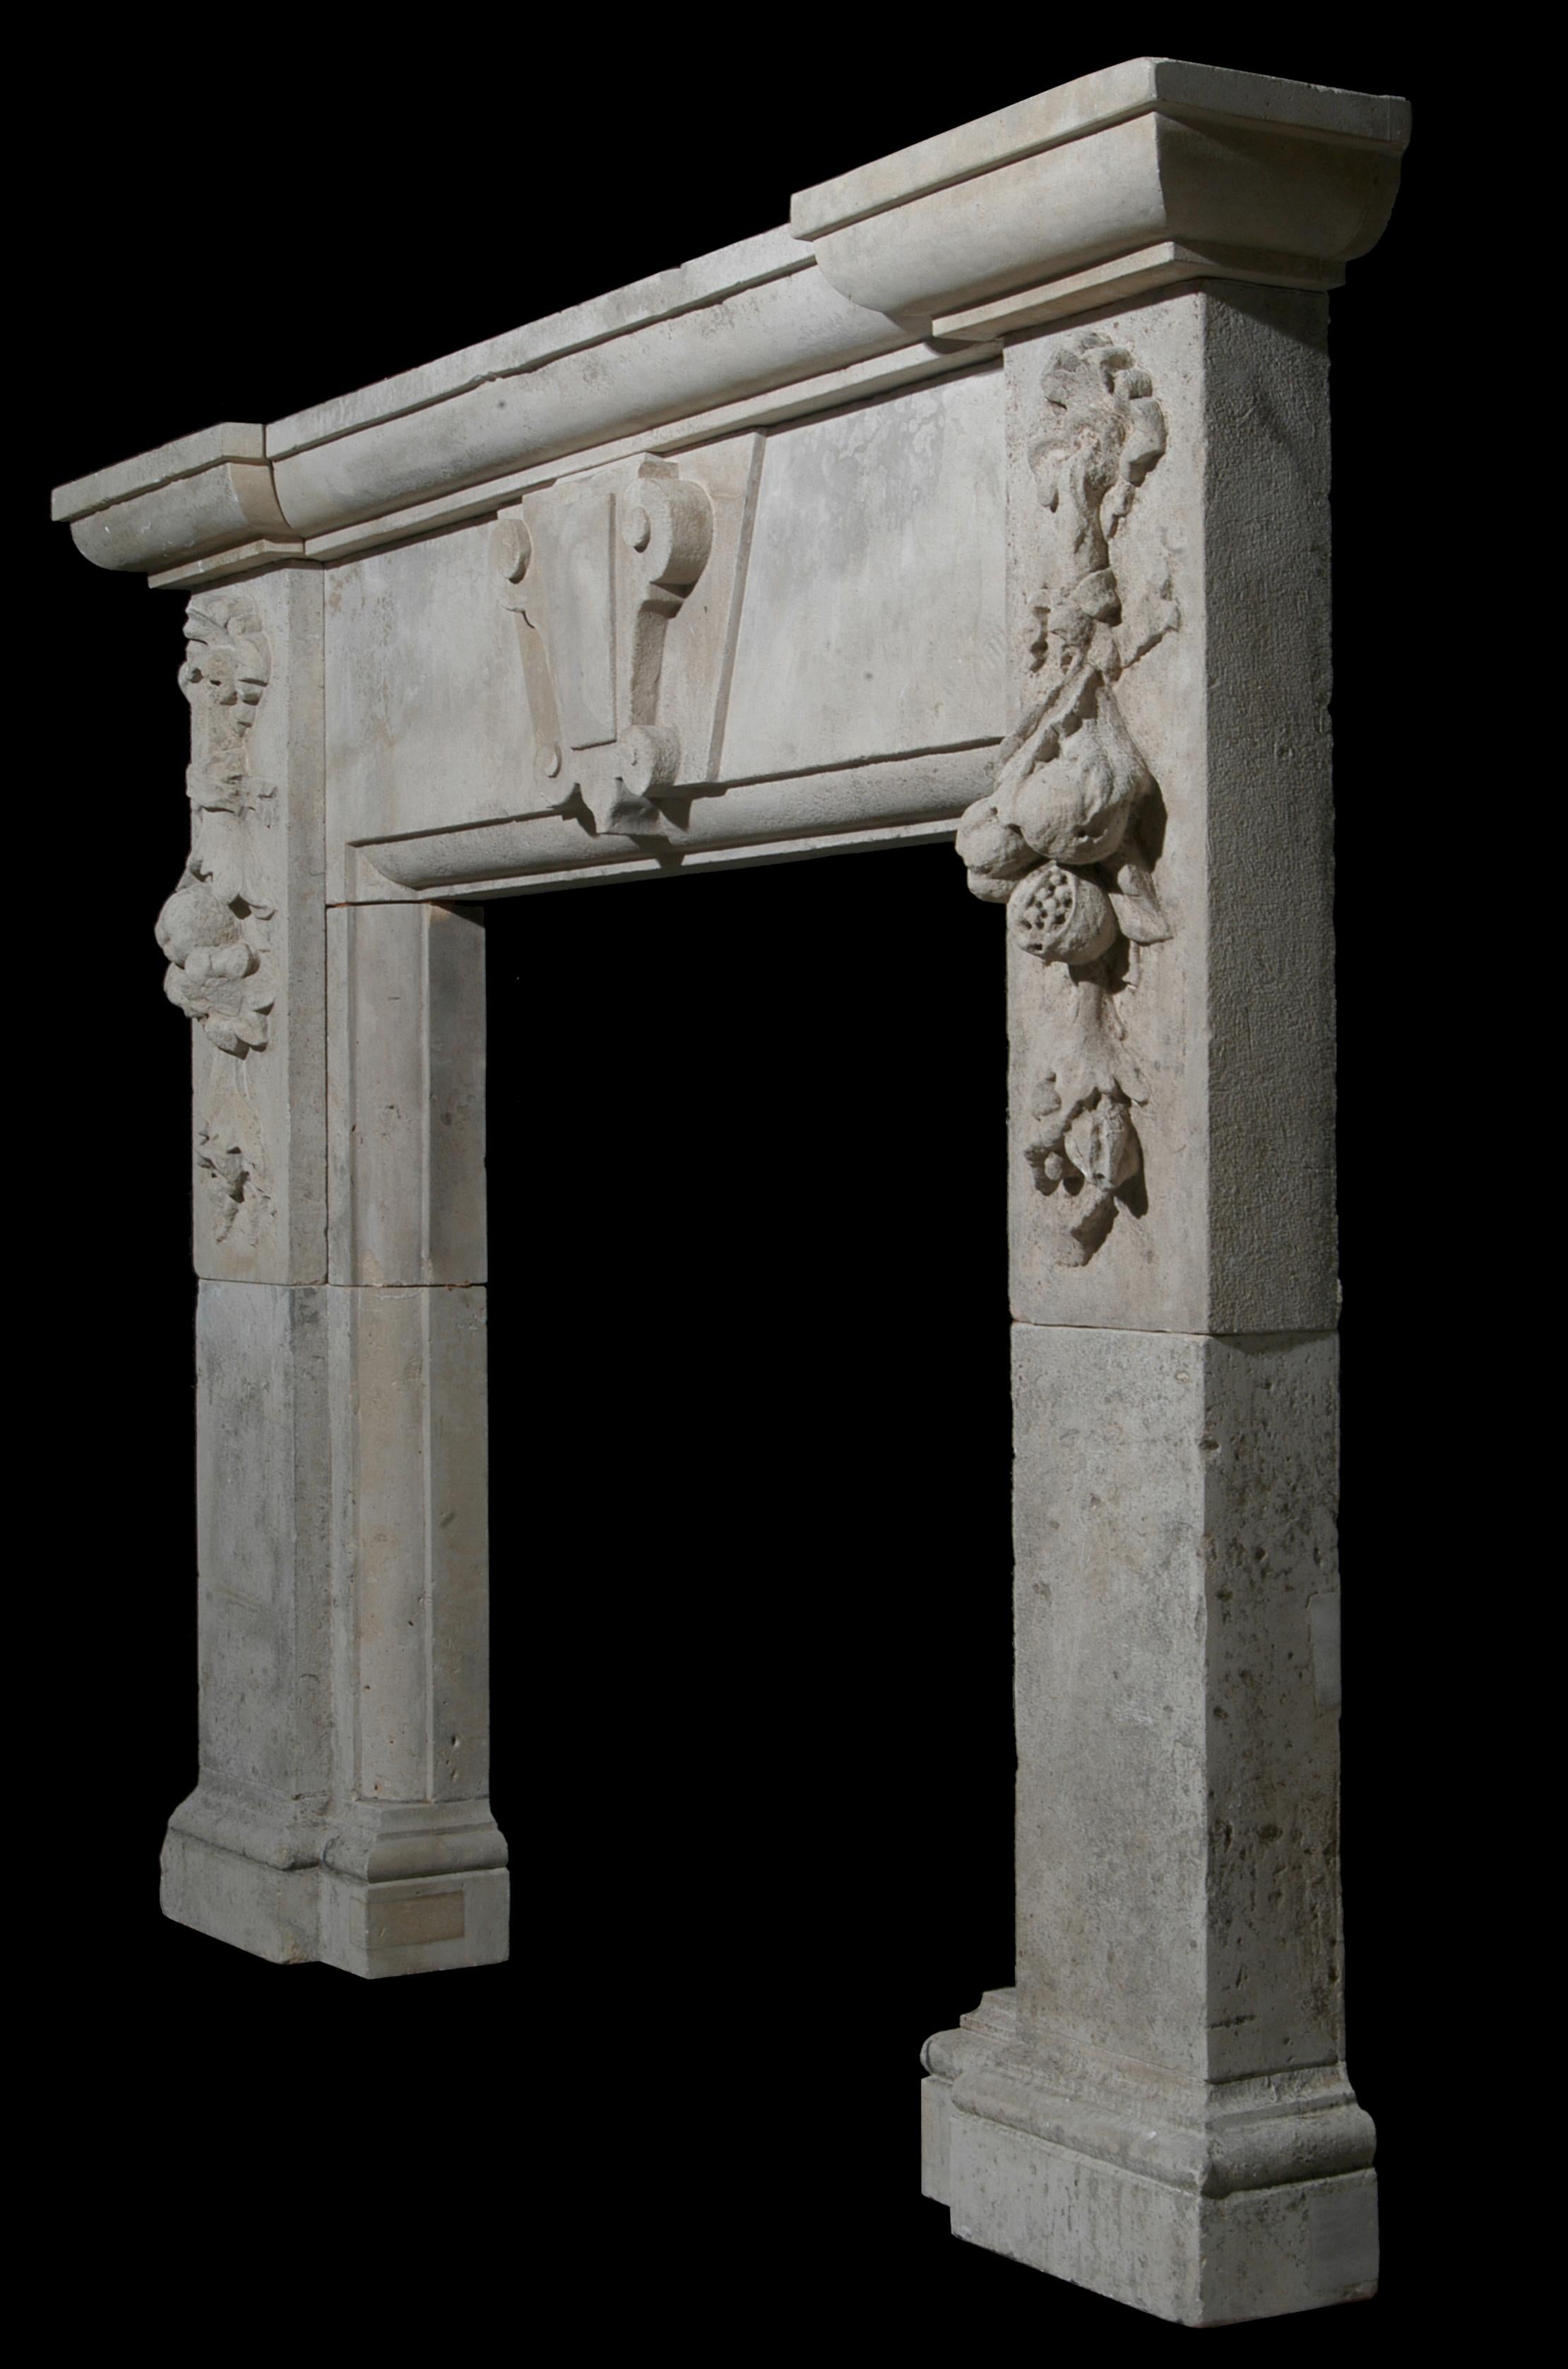 Cheminée de style Renaissance en pierre calcaire, bien sculptée, avec une clé de voûte centrale sur la frise, et des chutes de rubans et de fleurs profondément sculptées sur les jambages, surmontée d'une étagère en trois parties sur le front de